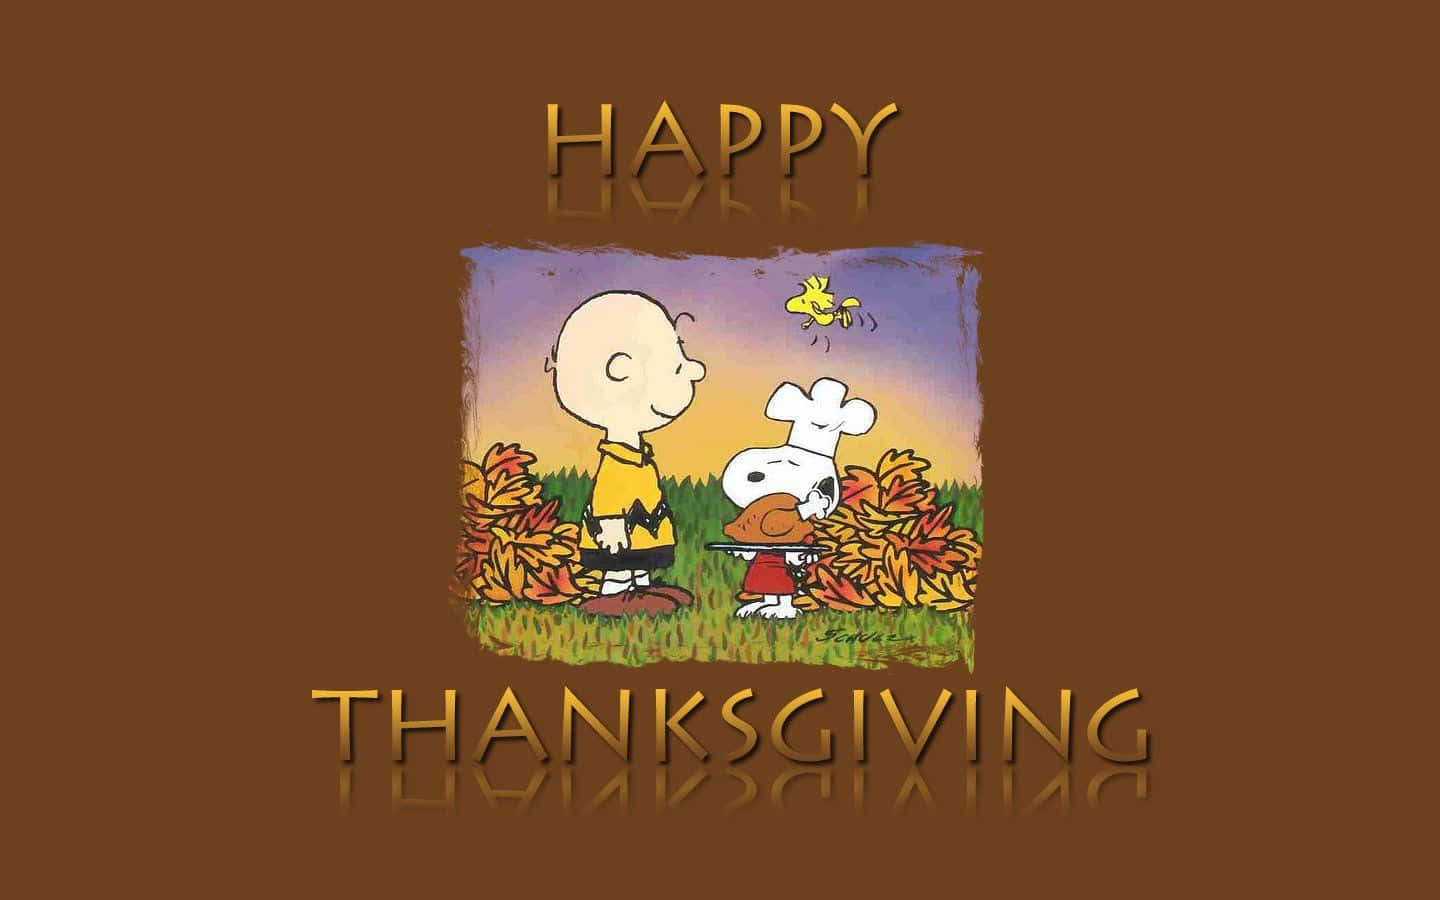 Snoopyund Charlie Brown Wünschen Euch Ein Fröhliches Thanksgiving – Grußkarte. Wallpaper